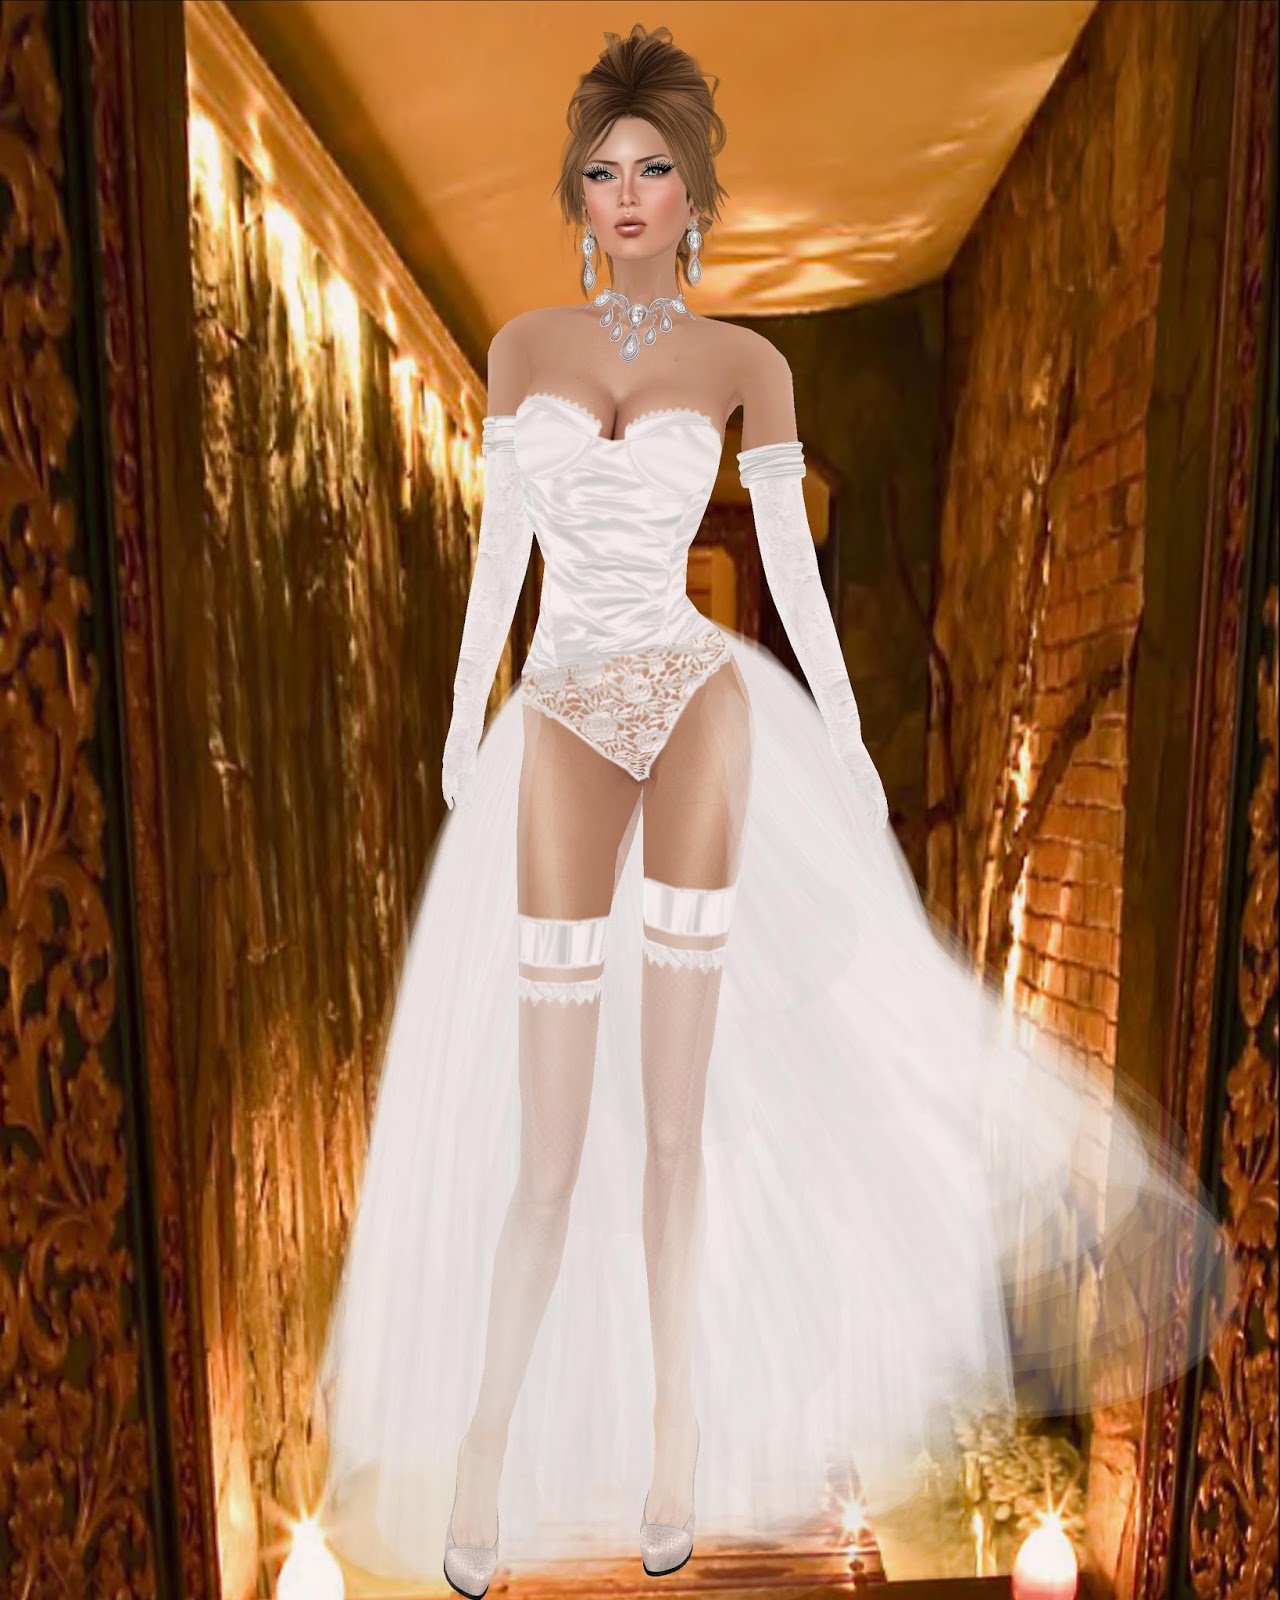 Голая невеста в прозрачном платье (61 фото) - порно и фото голых на укатлант.рф